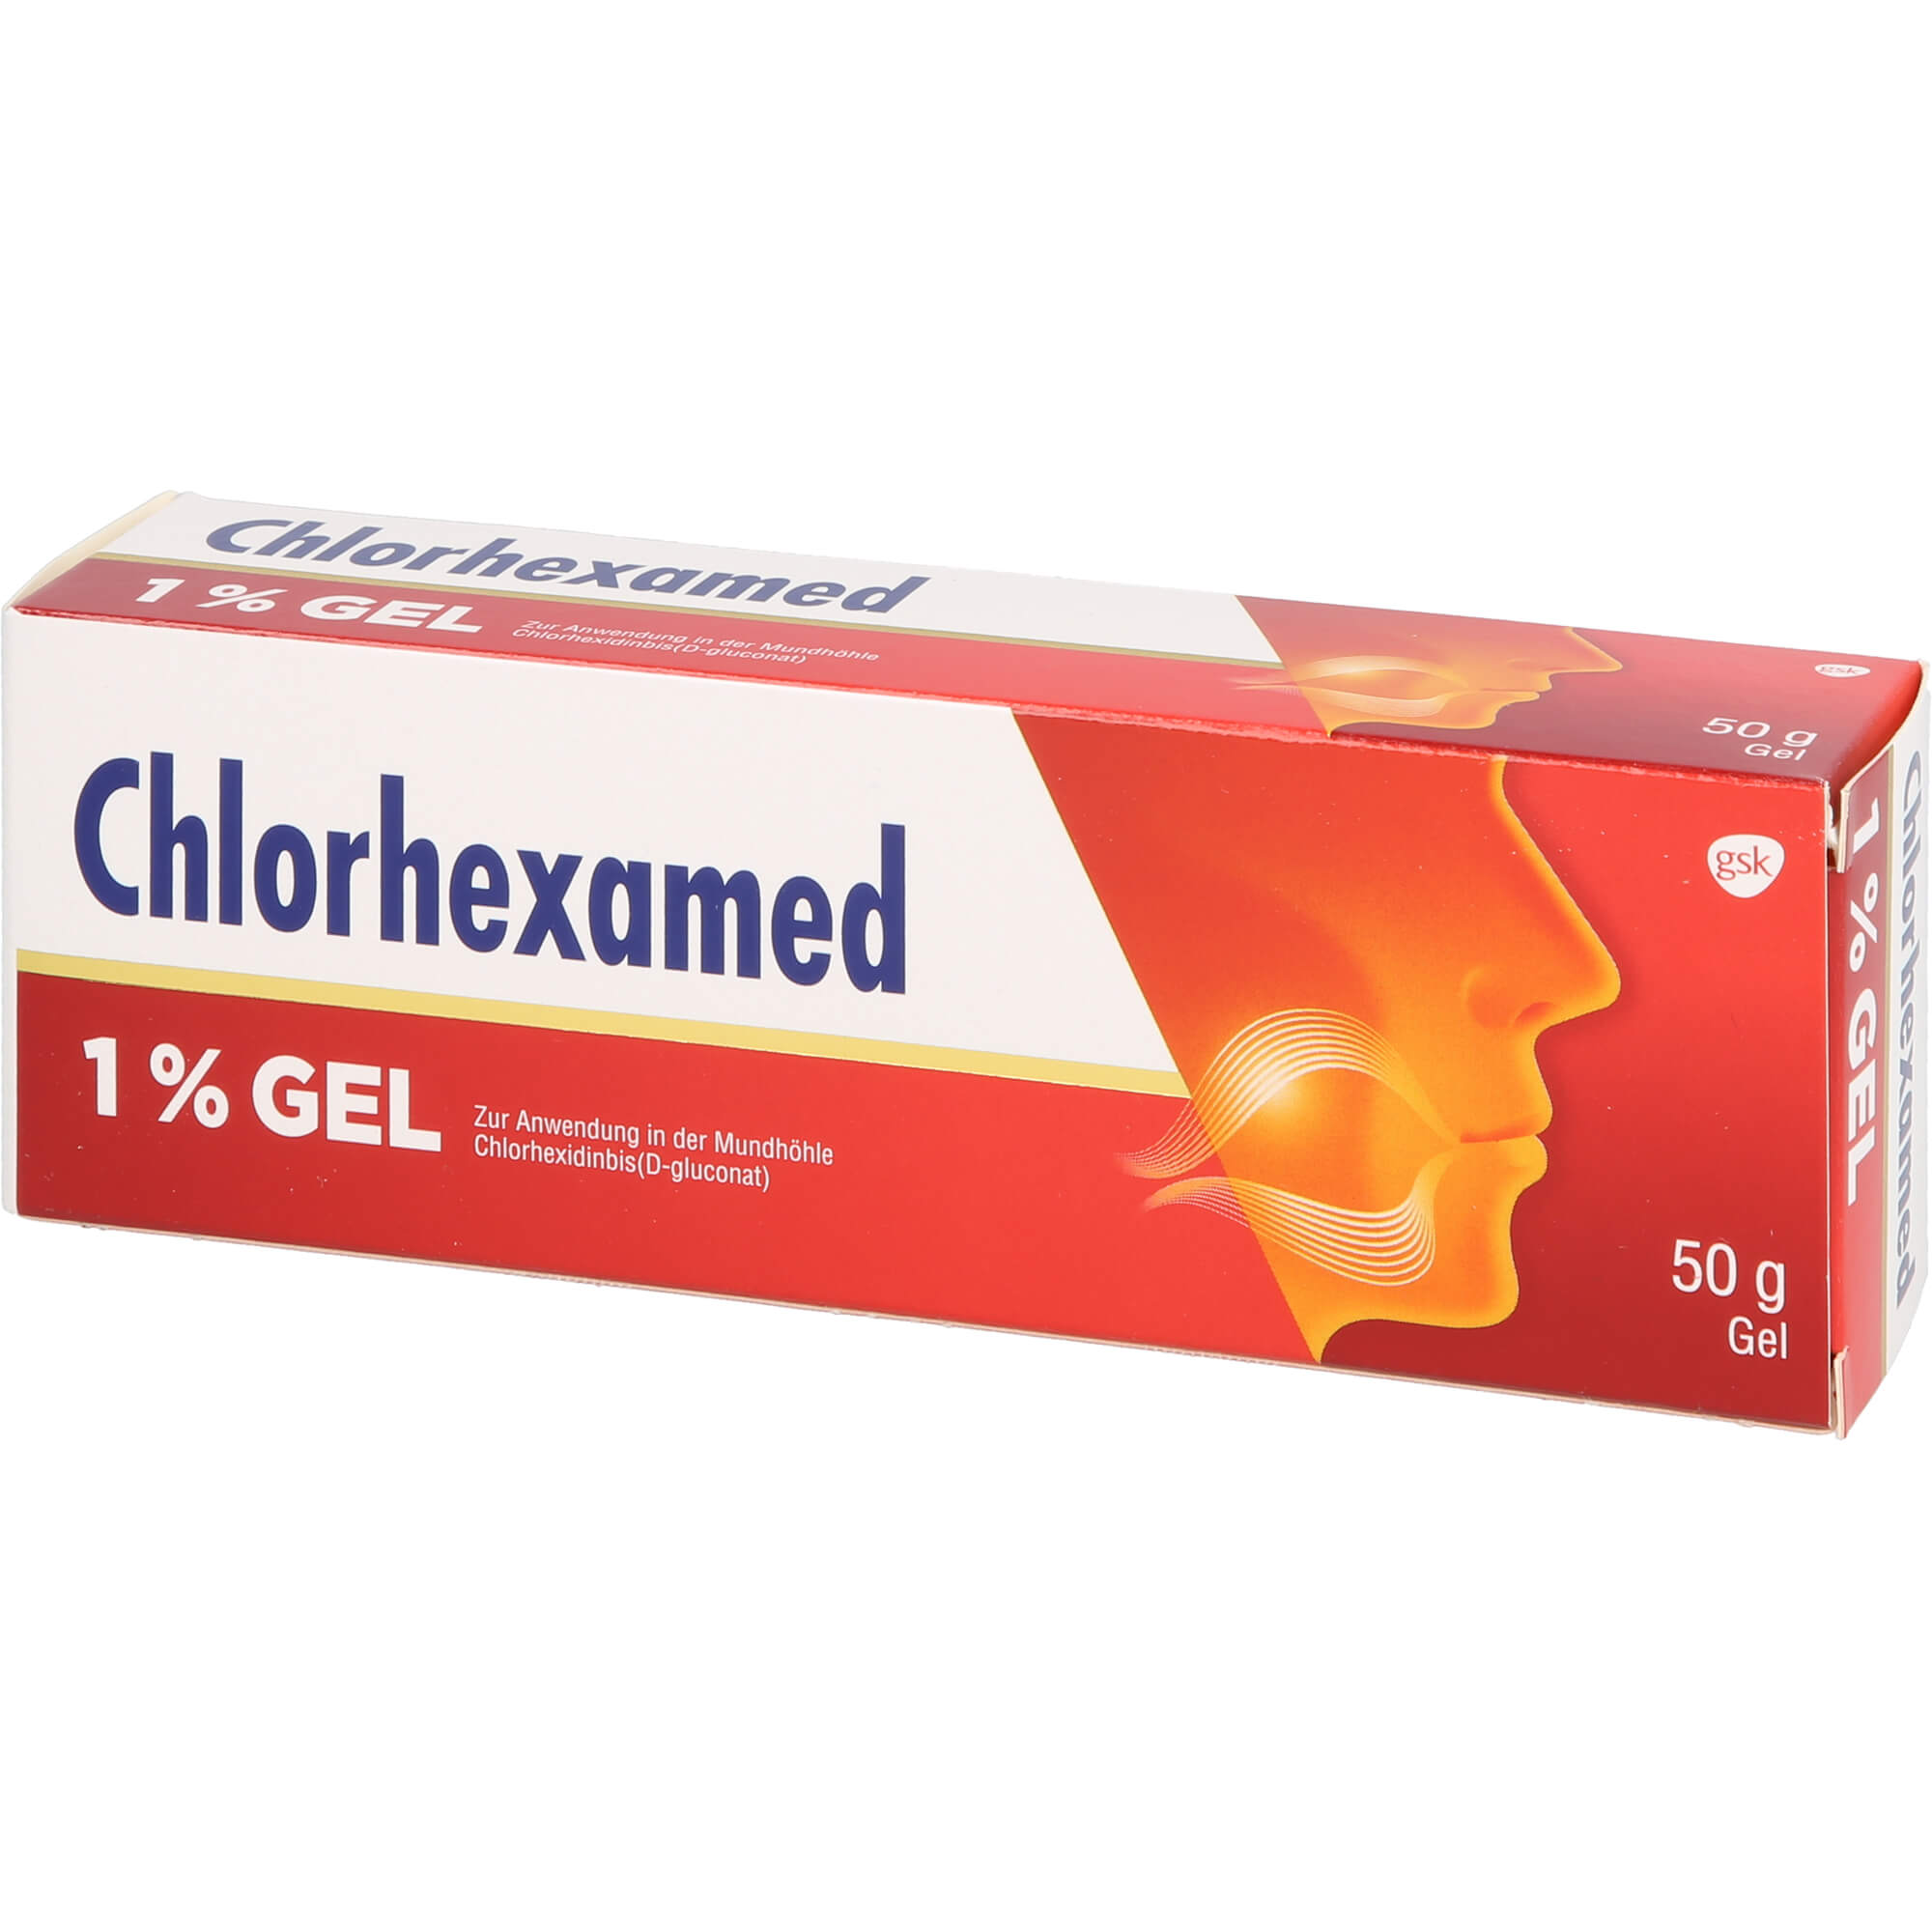 Chlorhexamed 1% - Gel zur Anwendung in der Mundhöhle